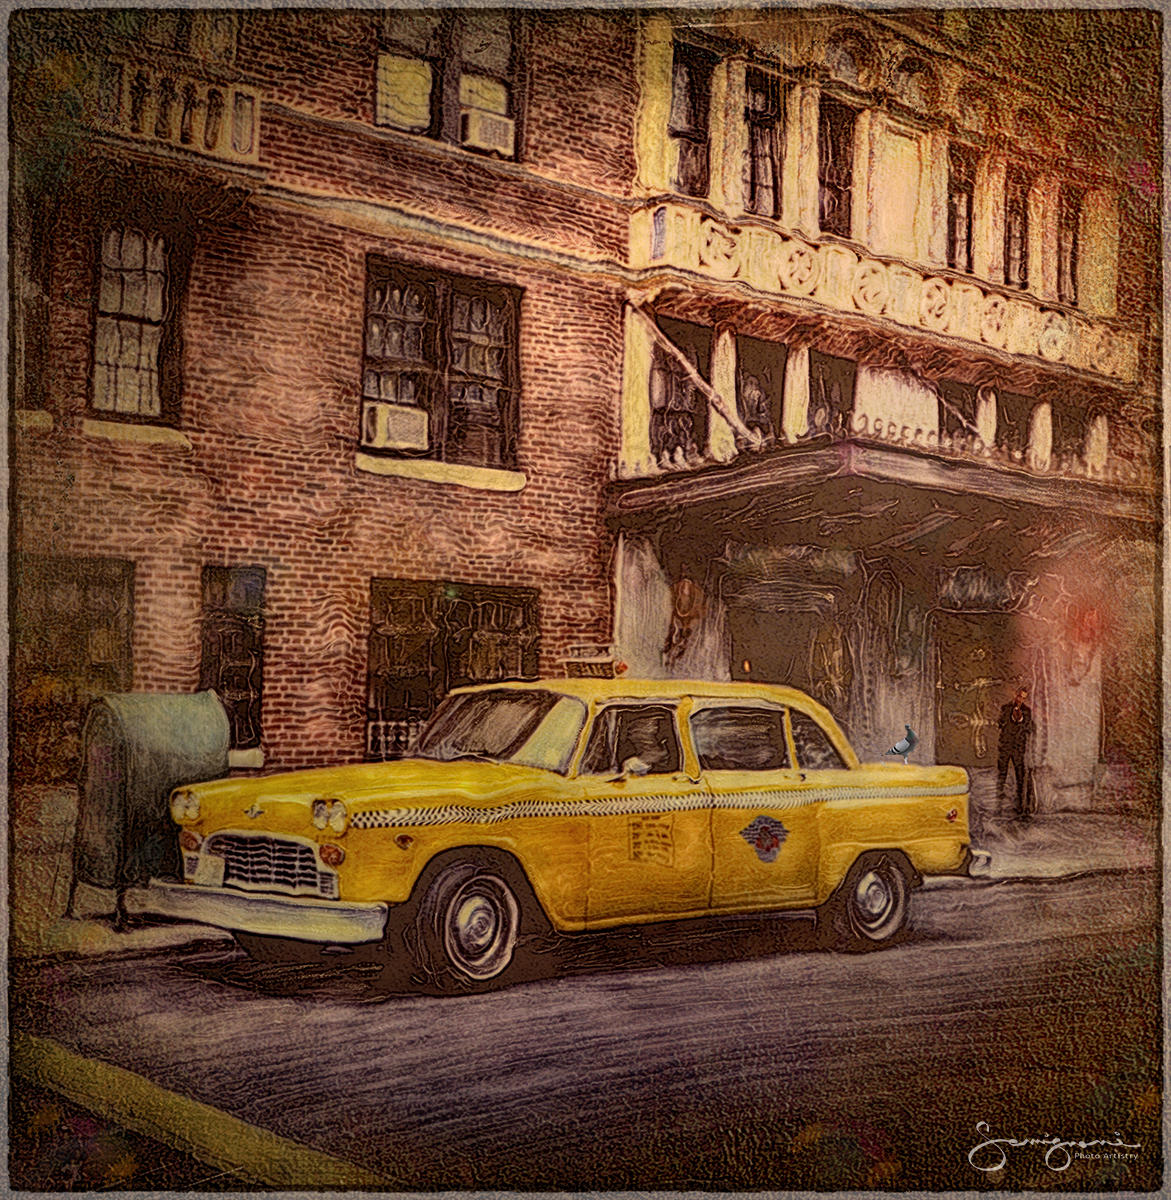 Checker Cab at Washington Square, NYC
